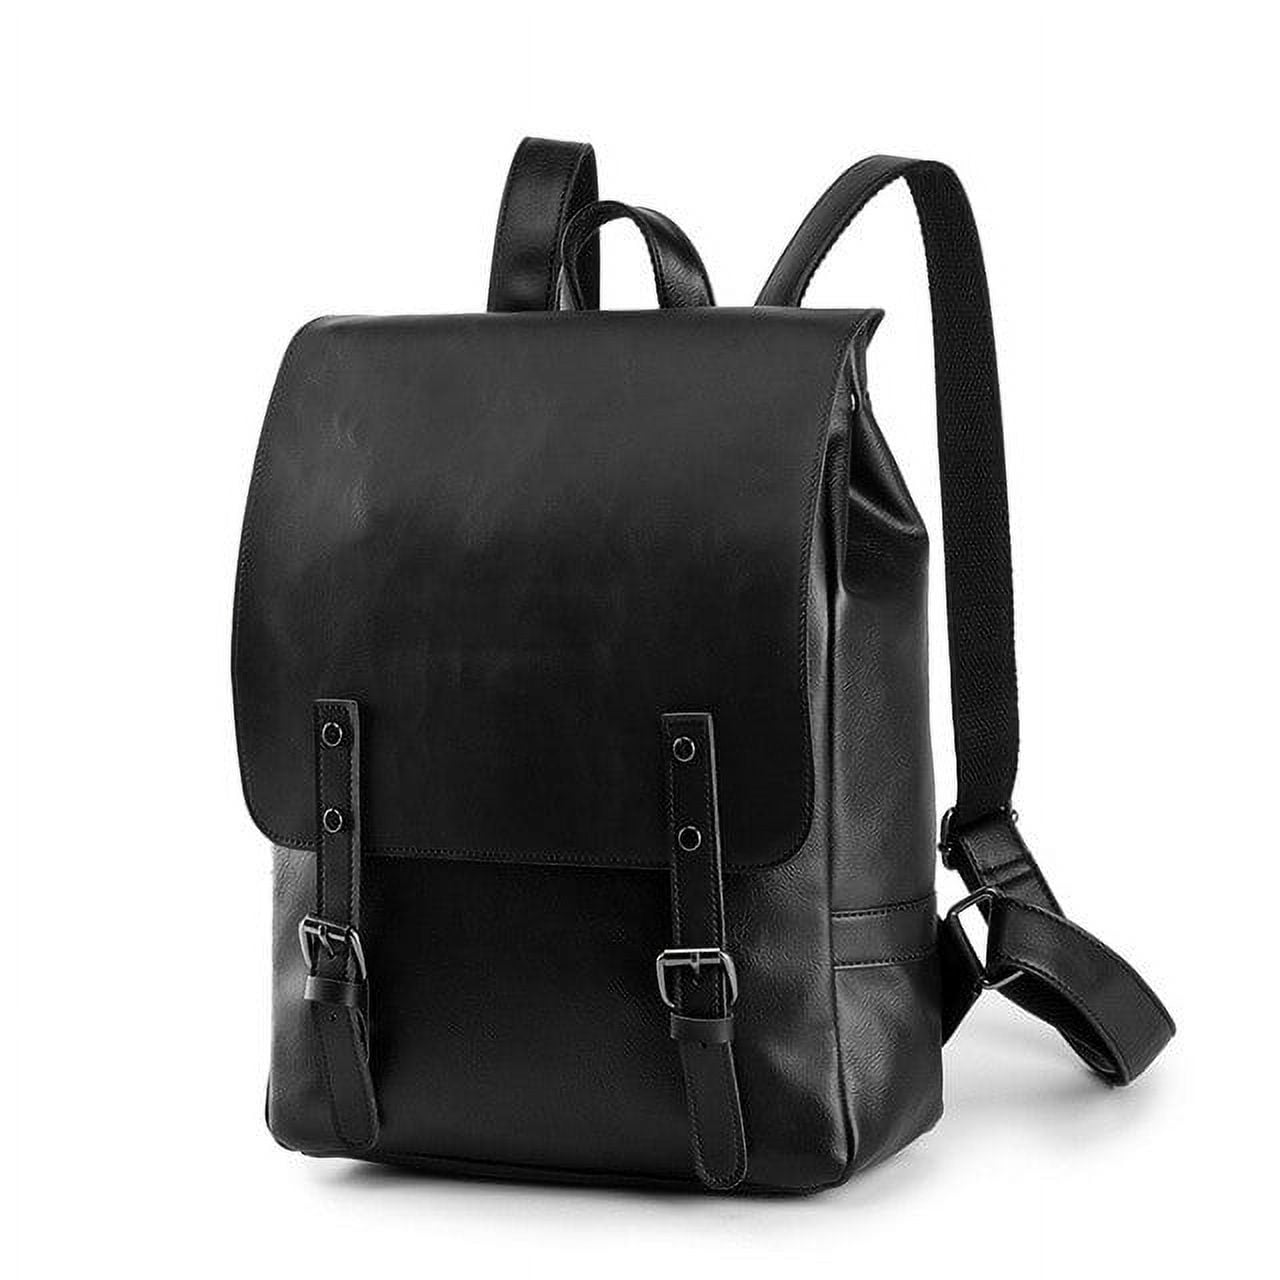 Chanel cc backpack black - Gem